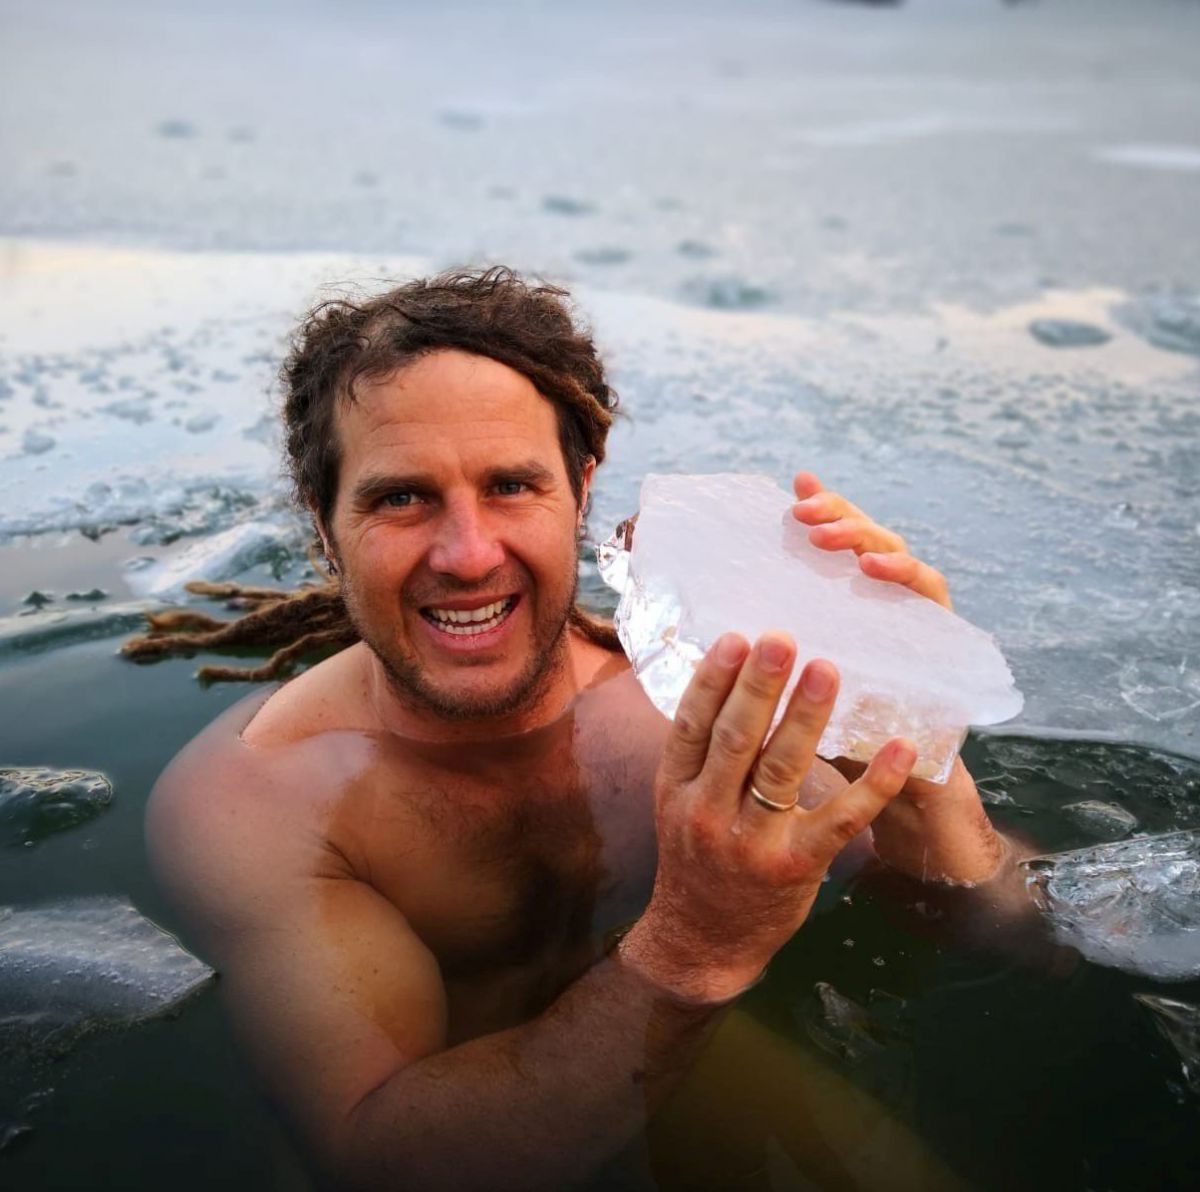 Daniel Fetz in einem Loch, dass er ins Eis gehackt hat. in den Händen hält er ein Stück Eis, ca. 5 cm dick.